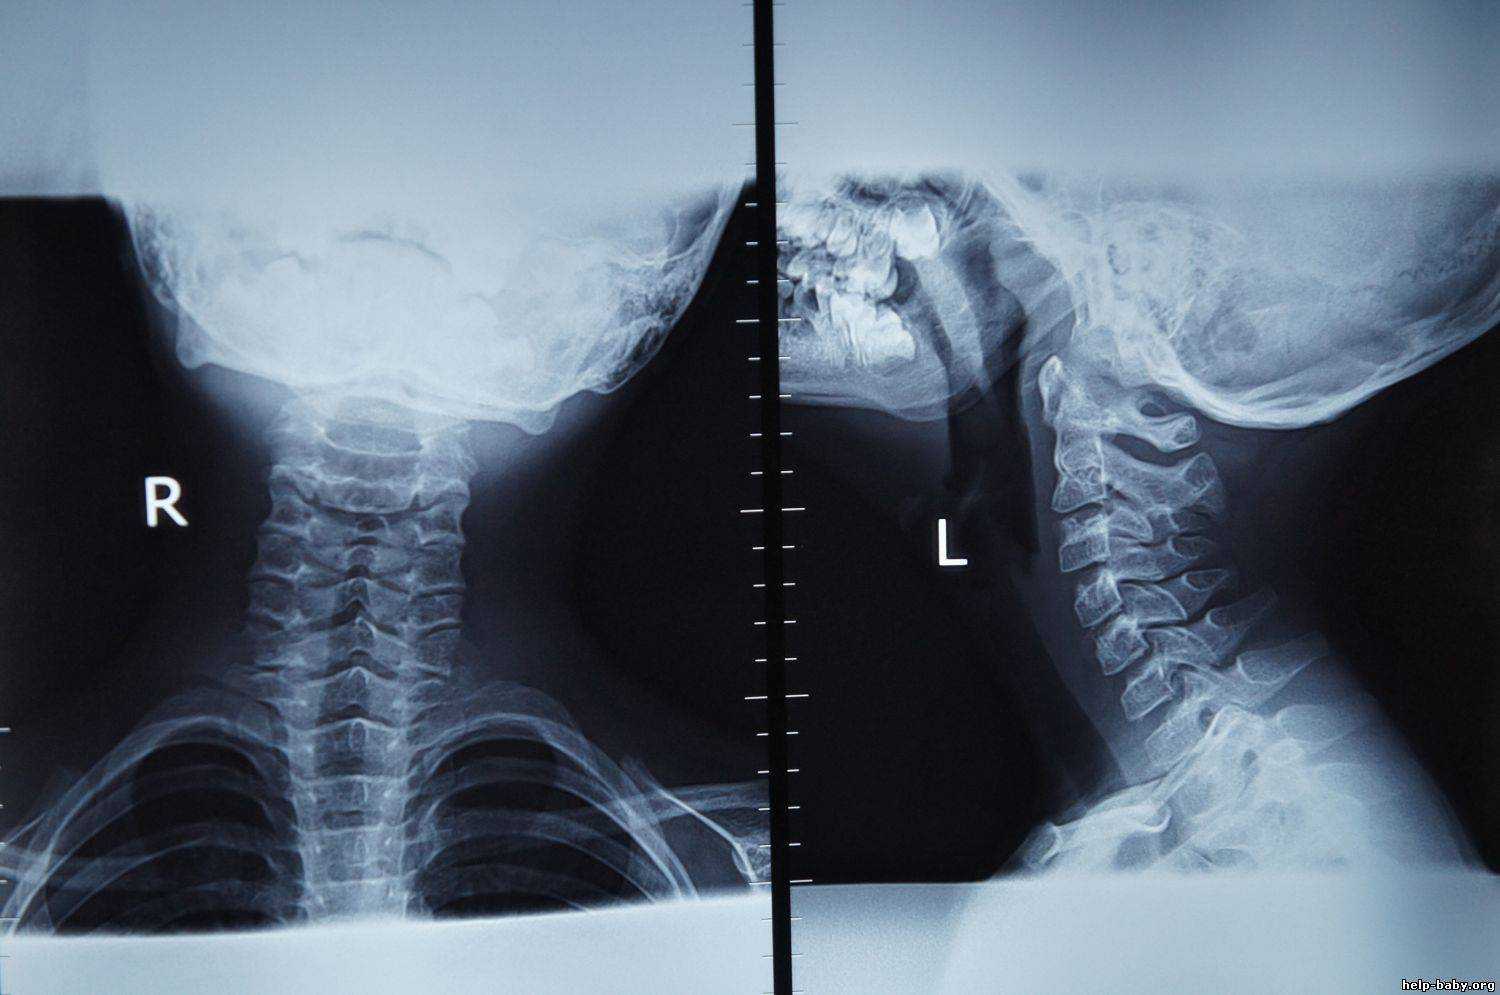 Рентген позвоночника: как делают, что показывает рентген, противопоказания